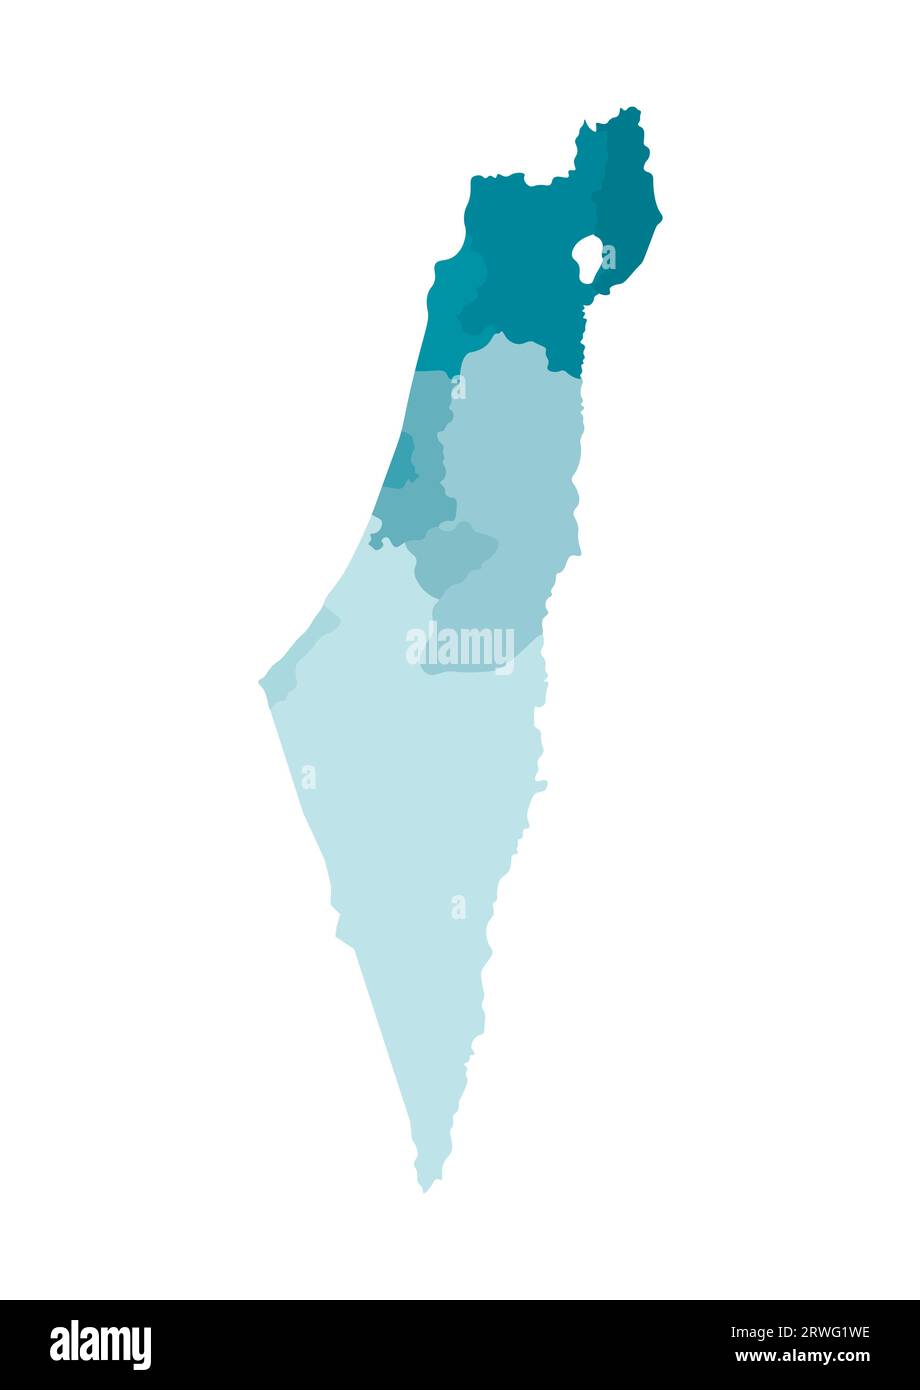 Illustrazione vettoriale isolata della mappa amministrativa semplificata di Israele. Confini dei distretti (regioni). Sagome kaki blu colorato. Illustrazione Vettoriale